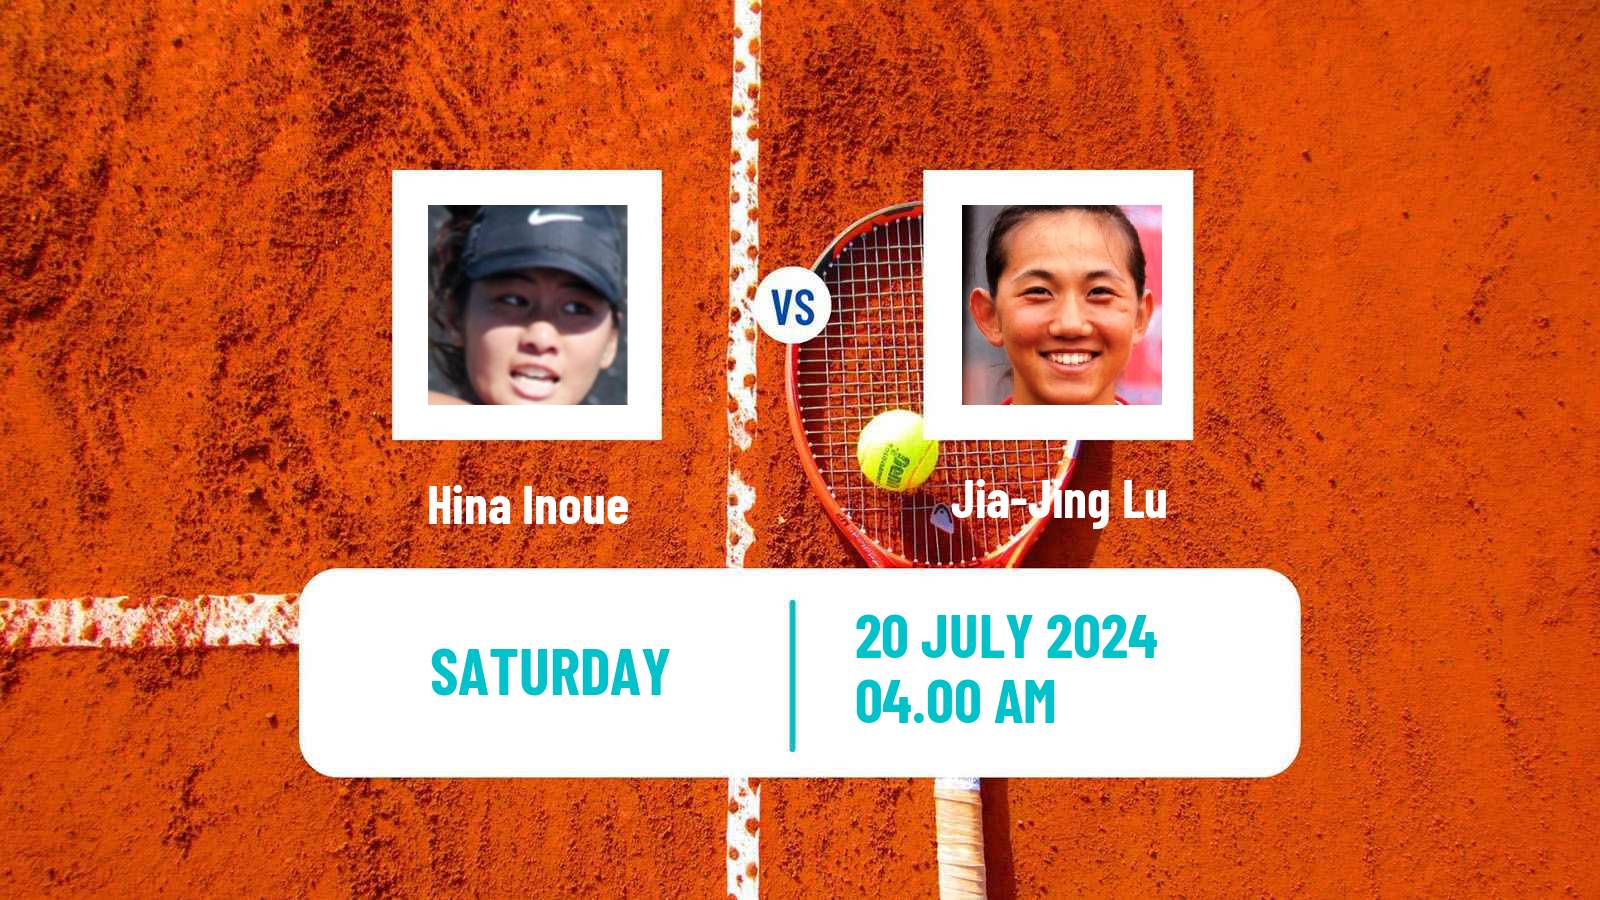 Tennis ITF W35 Tianjin 2 Women Hina Inoue - Jia-Jing Lu